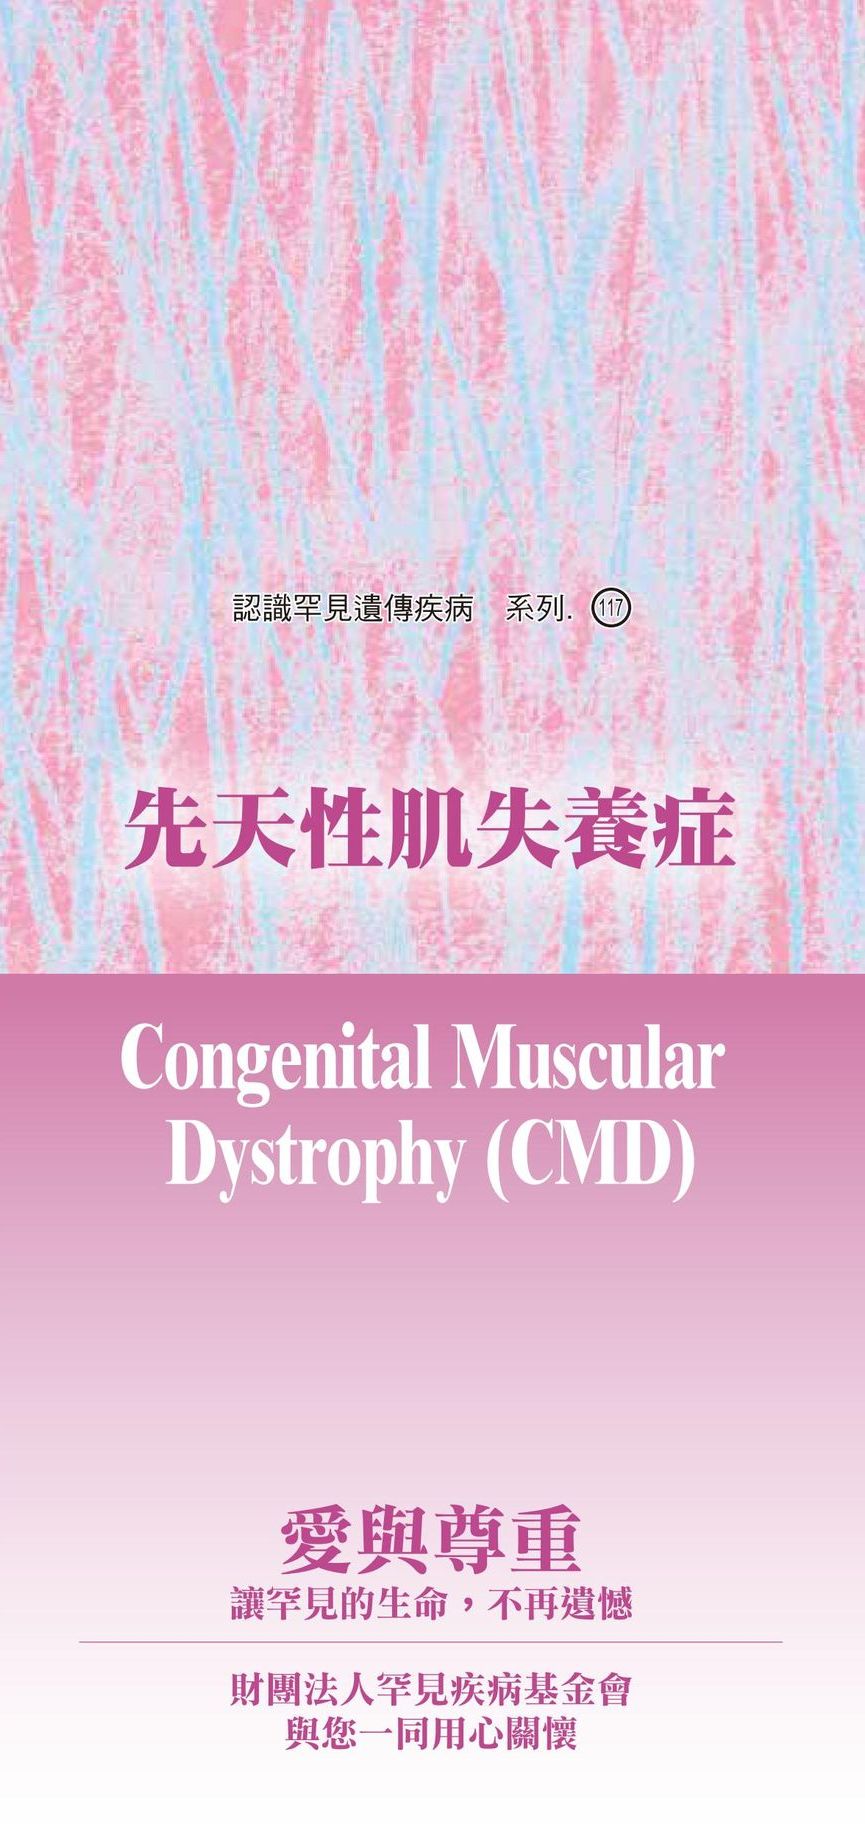 先天性肌失養症  ( Congenital Muscular Dystrophy )文章照片